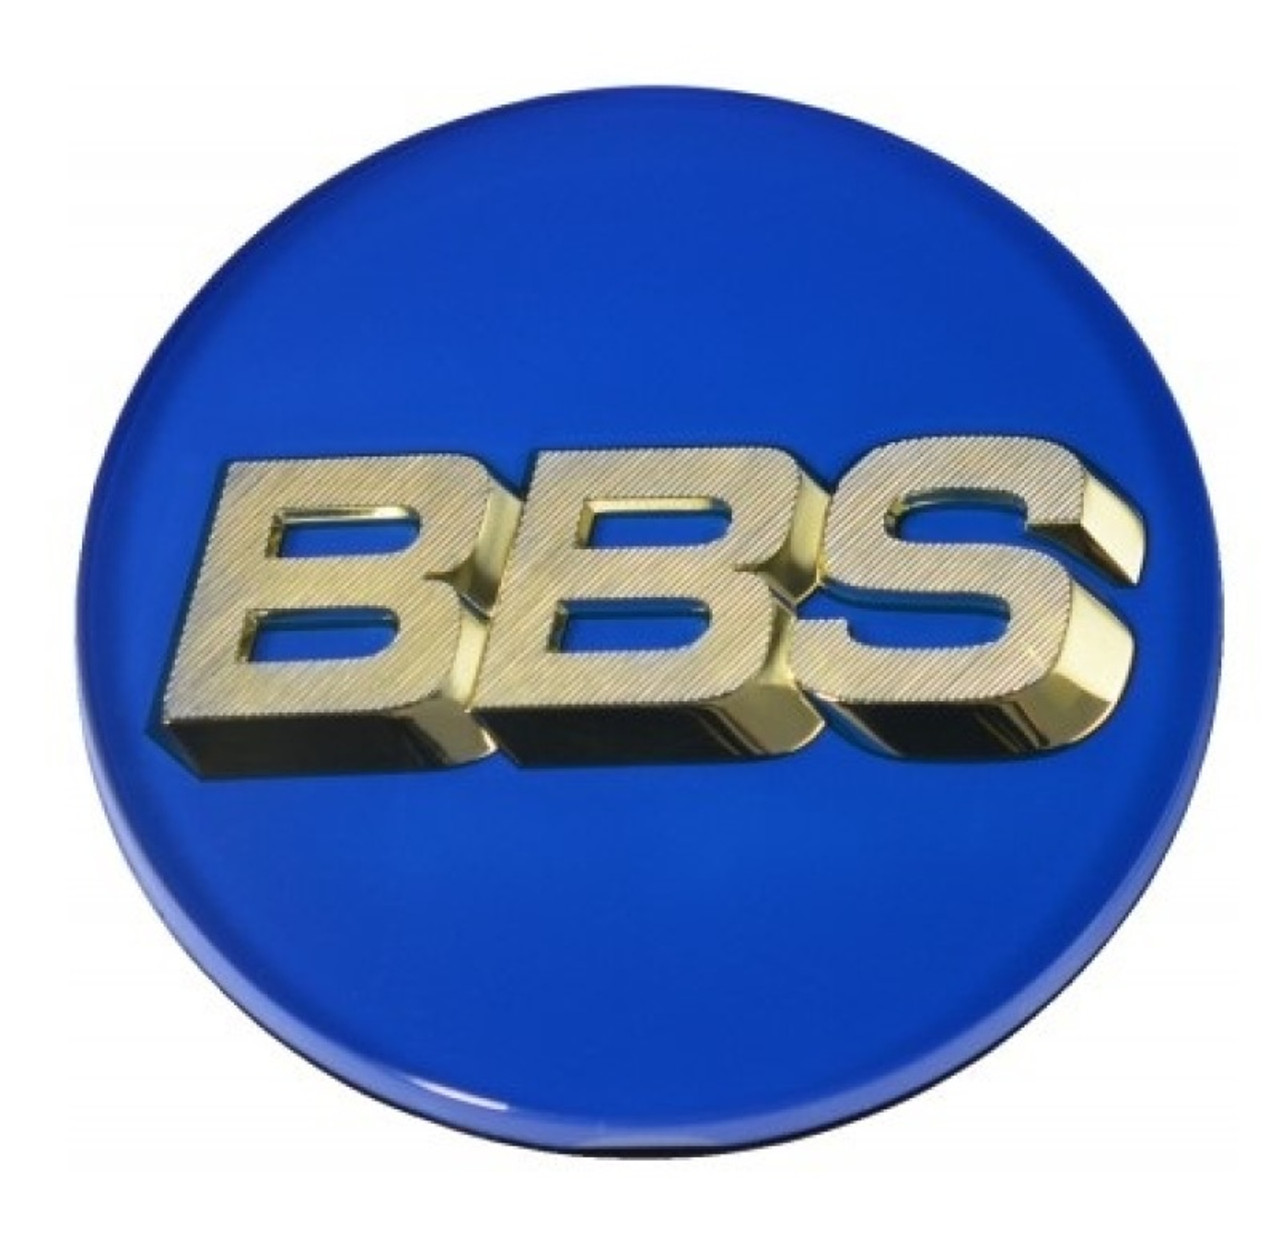 BBS Center Cap 70.6mm Blue/Gold (4-Tab) - 56.24.132 User 1